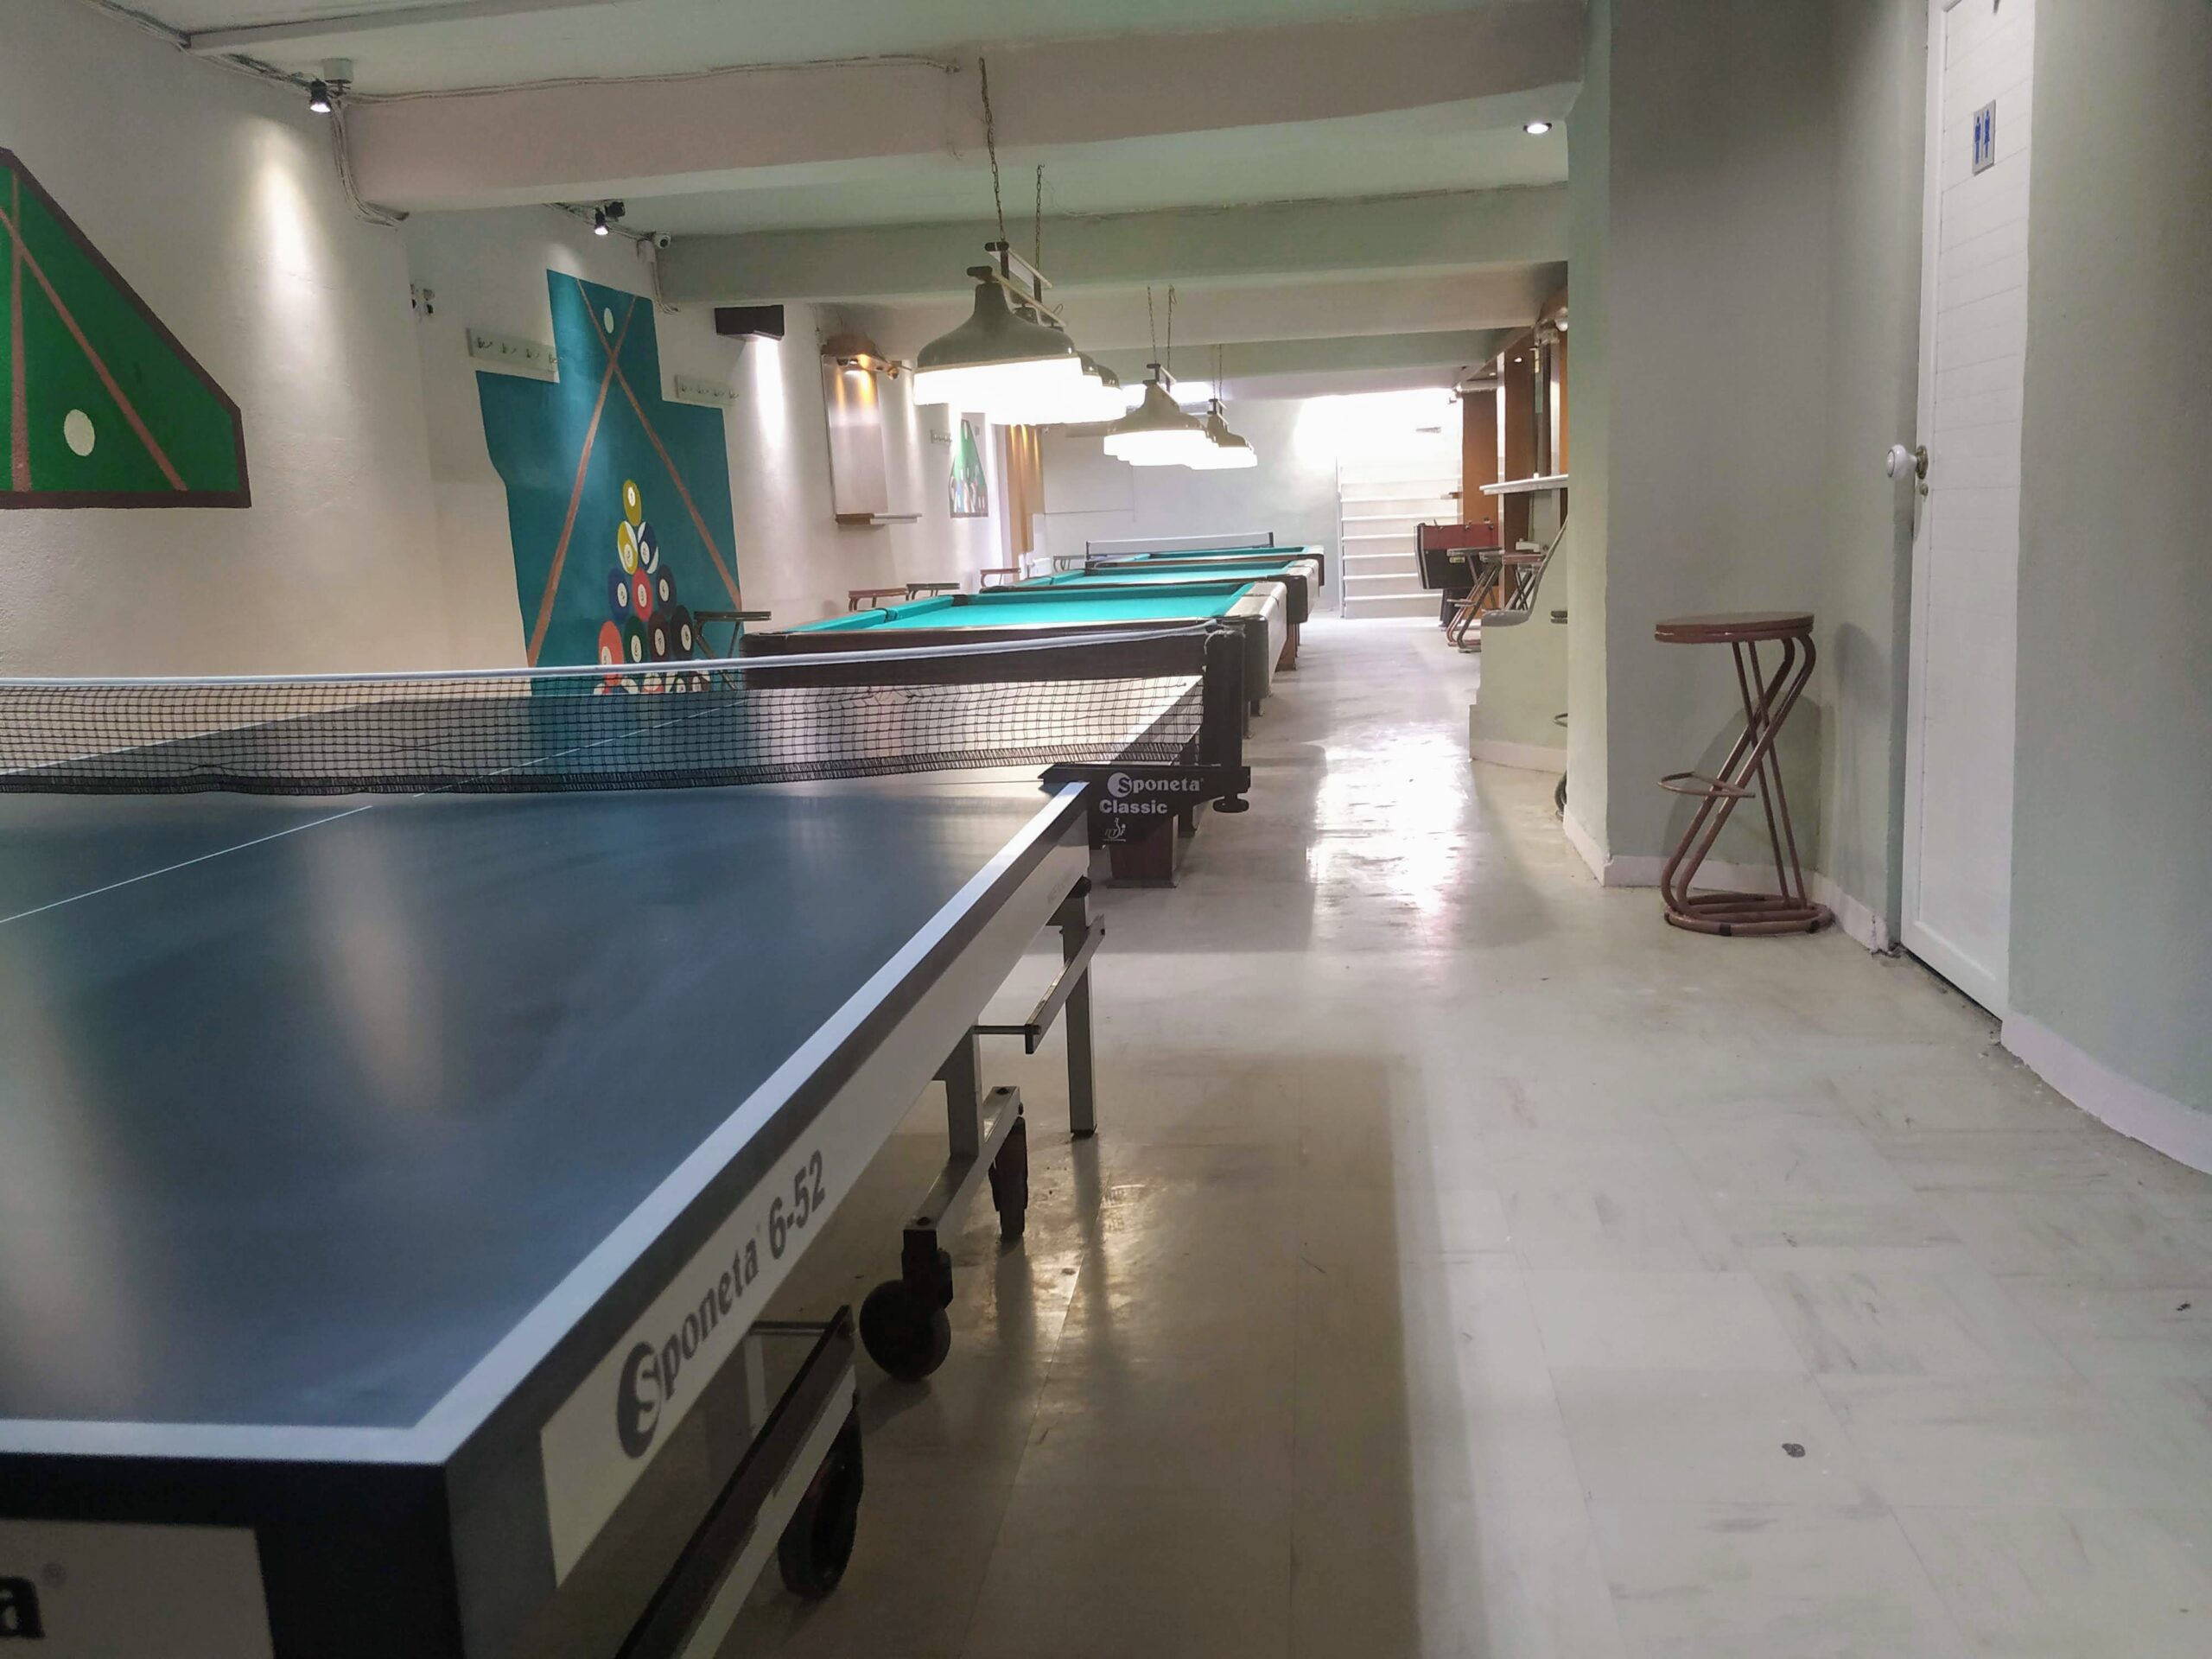 ΣΠΑΡΤΗ – Πωλείται επιχείρηση καφενείο – internet cafe – μπιλιάρδο – ping pong